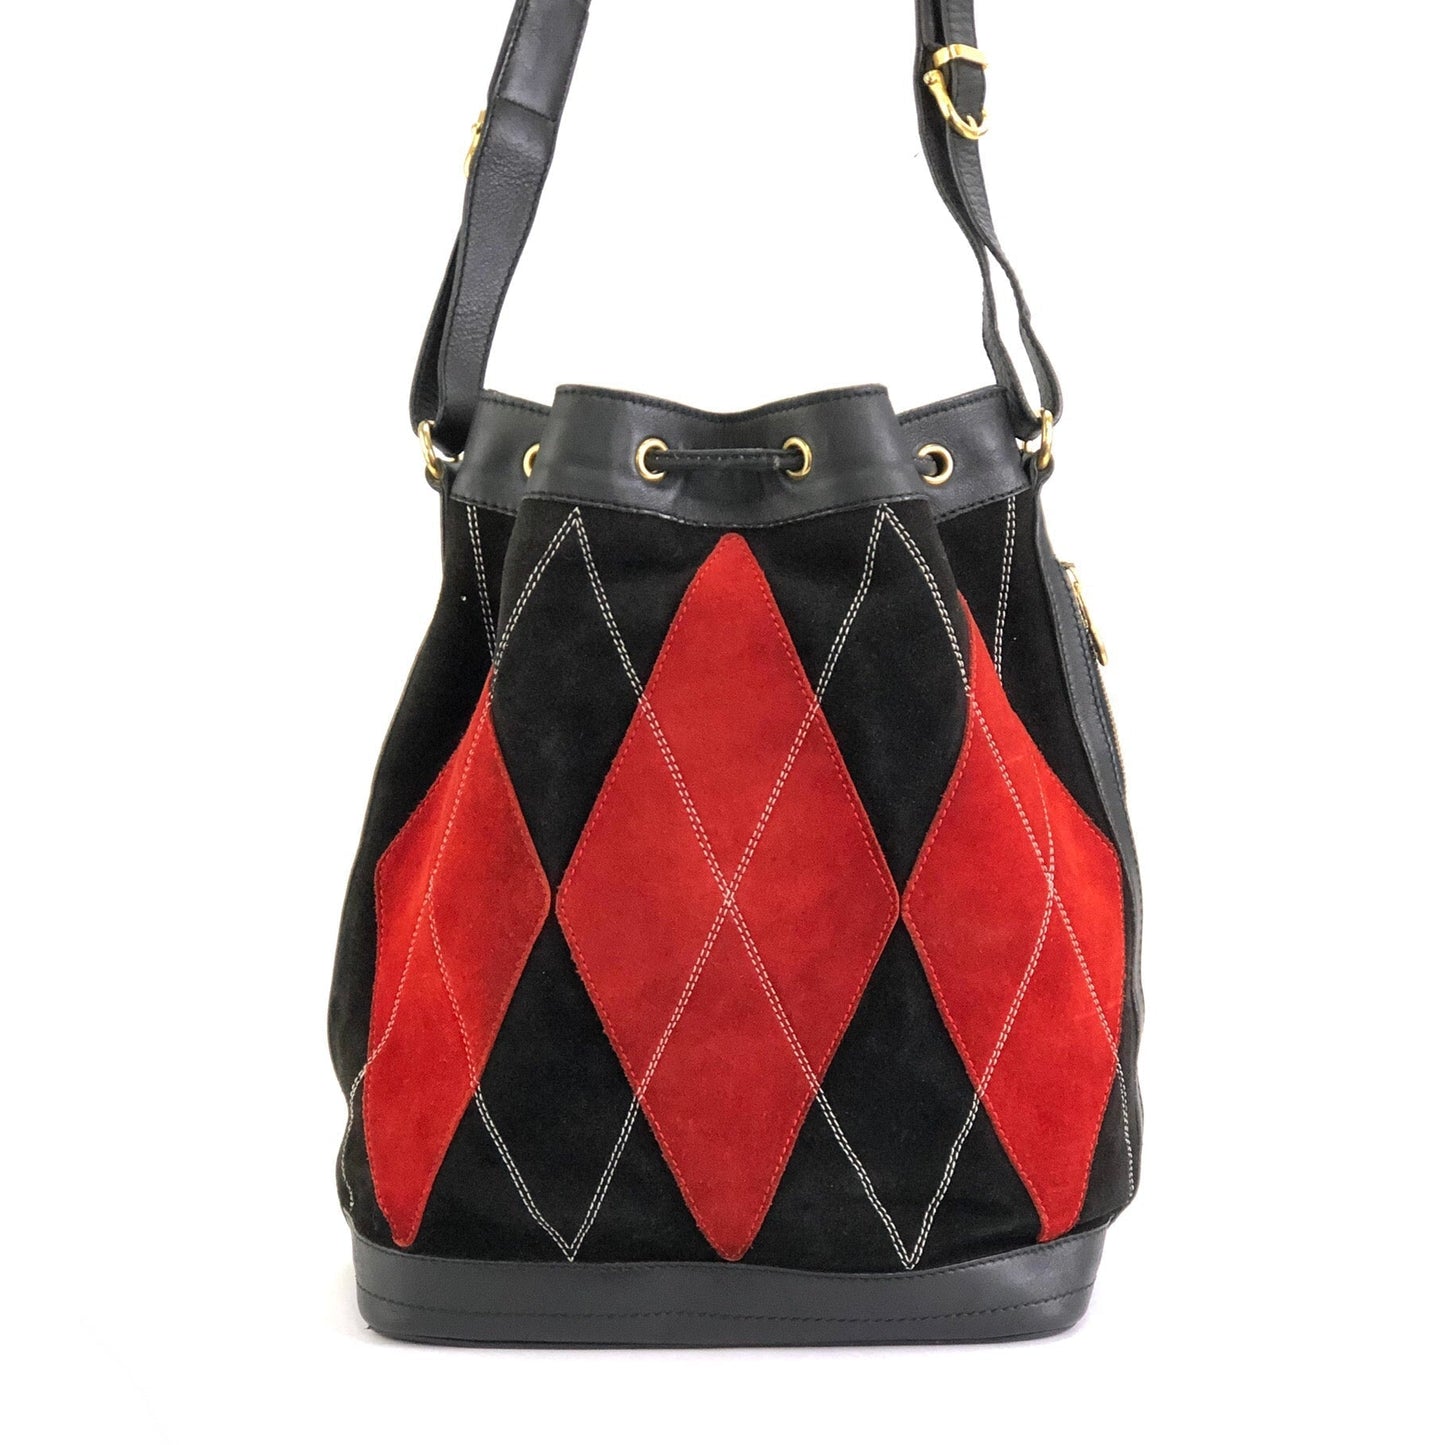 CELINE Argyle Mantel Drawstring Bag Bicolor Suede Leather Shoulder Bag Black Red Vintage Old Celine a764mf